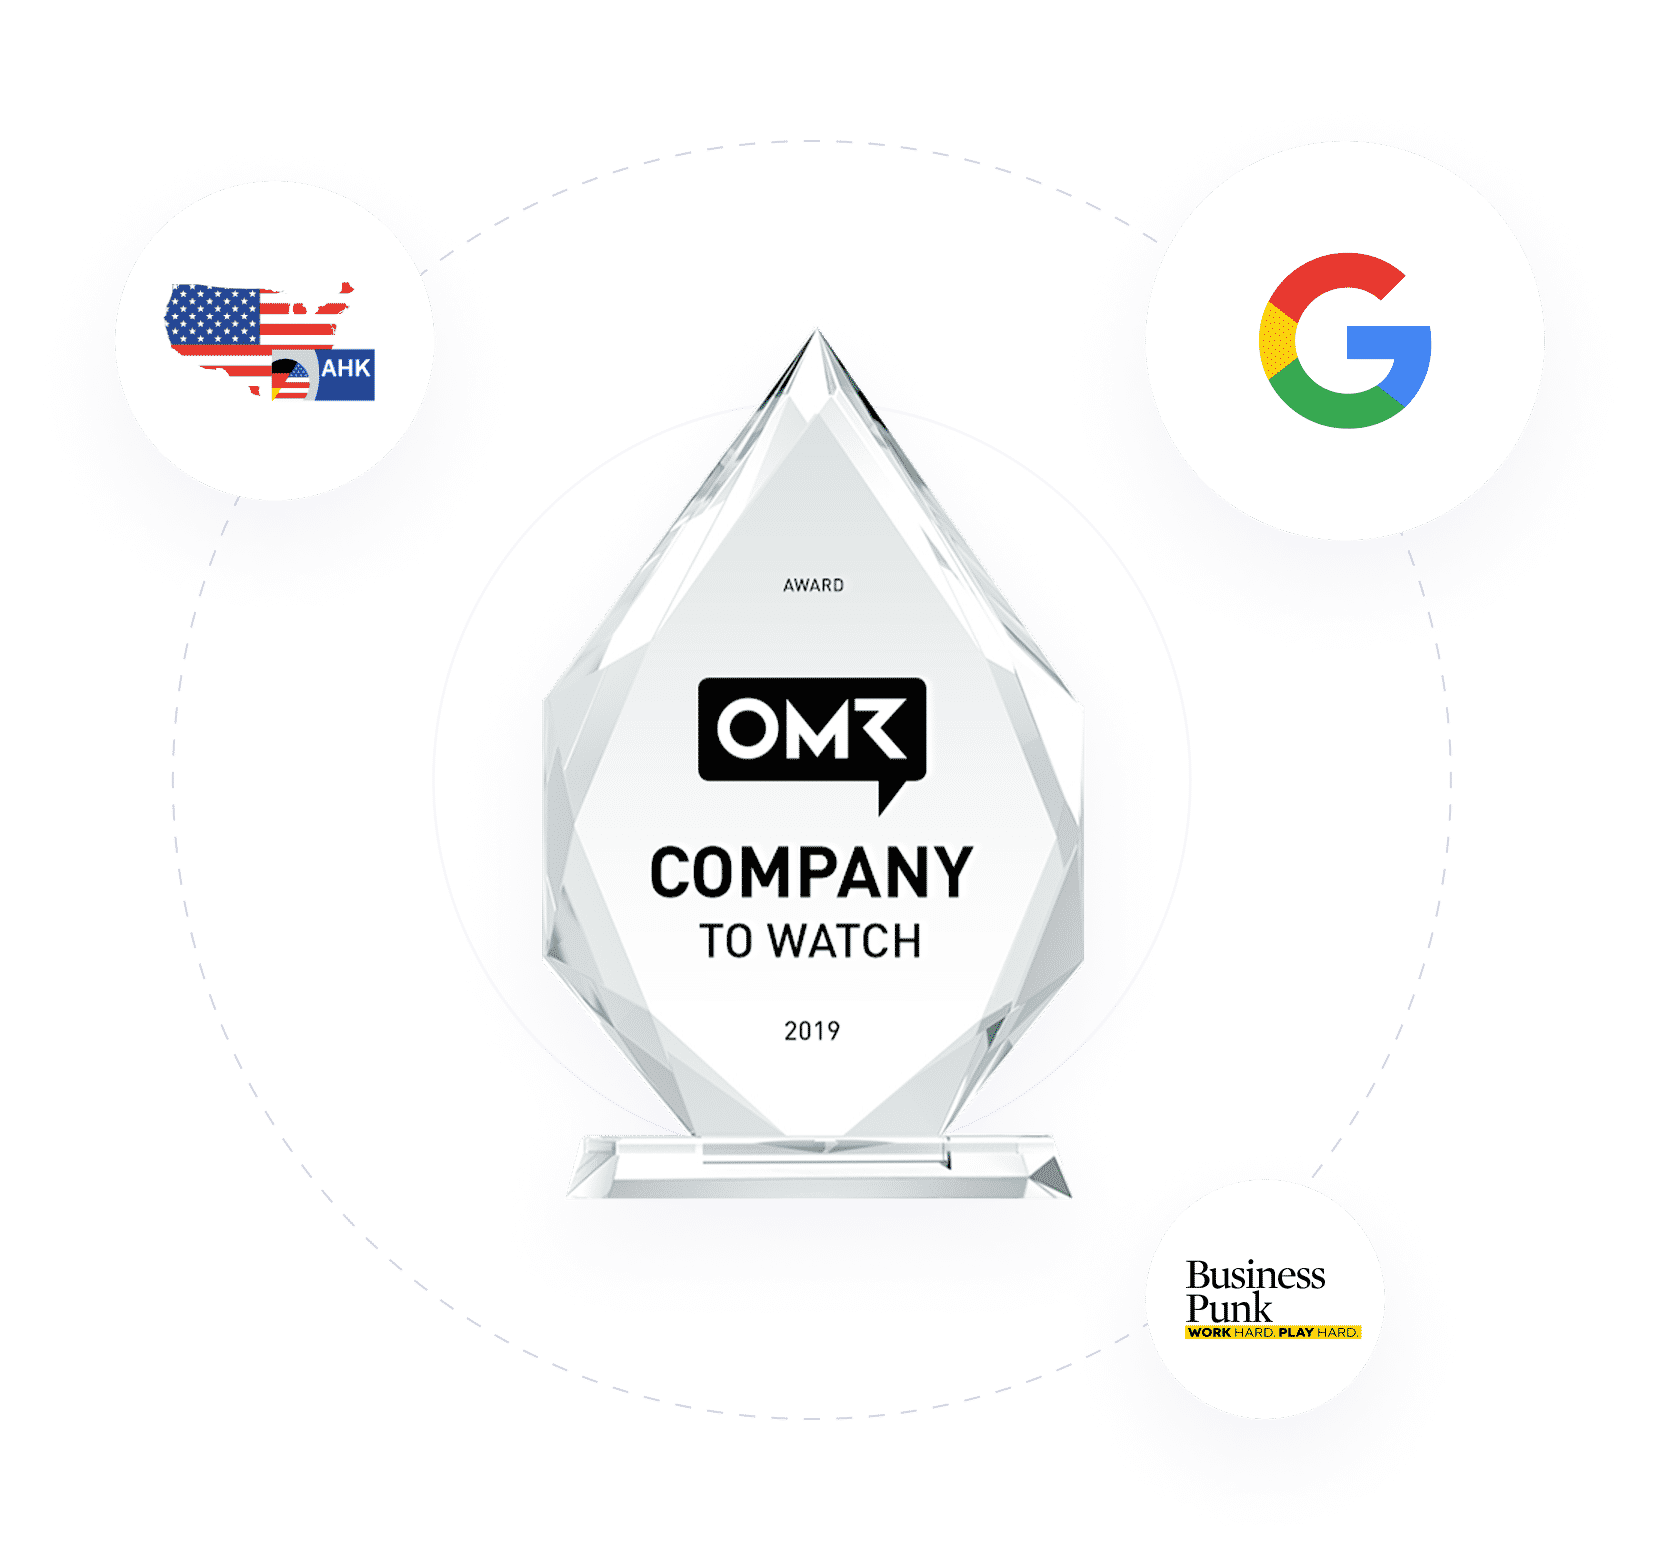 Awards von OMR, Google, Businesspunk und der Deutschen Außenhandelskammer in New York